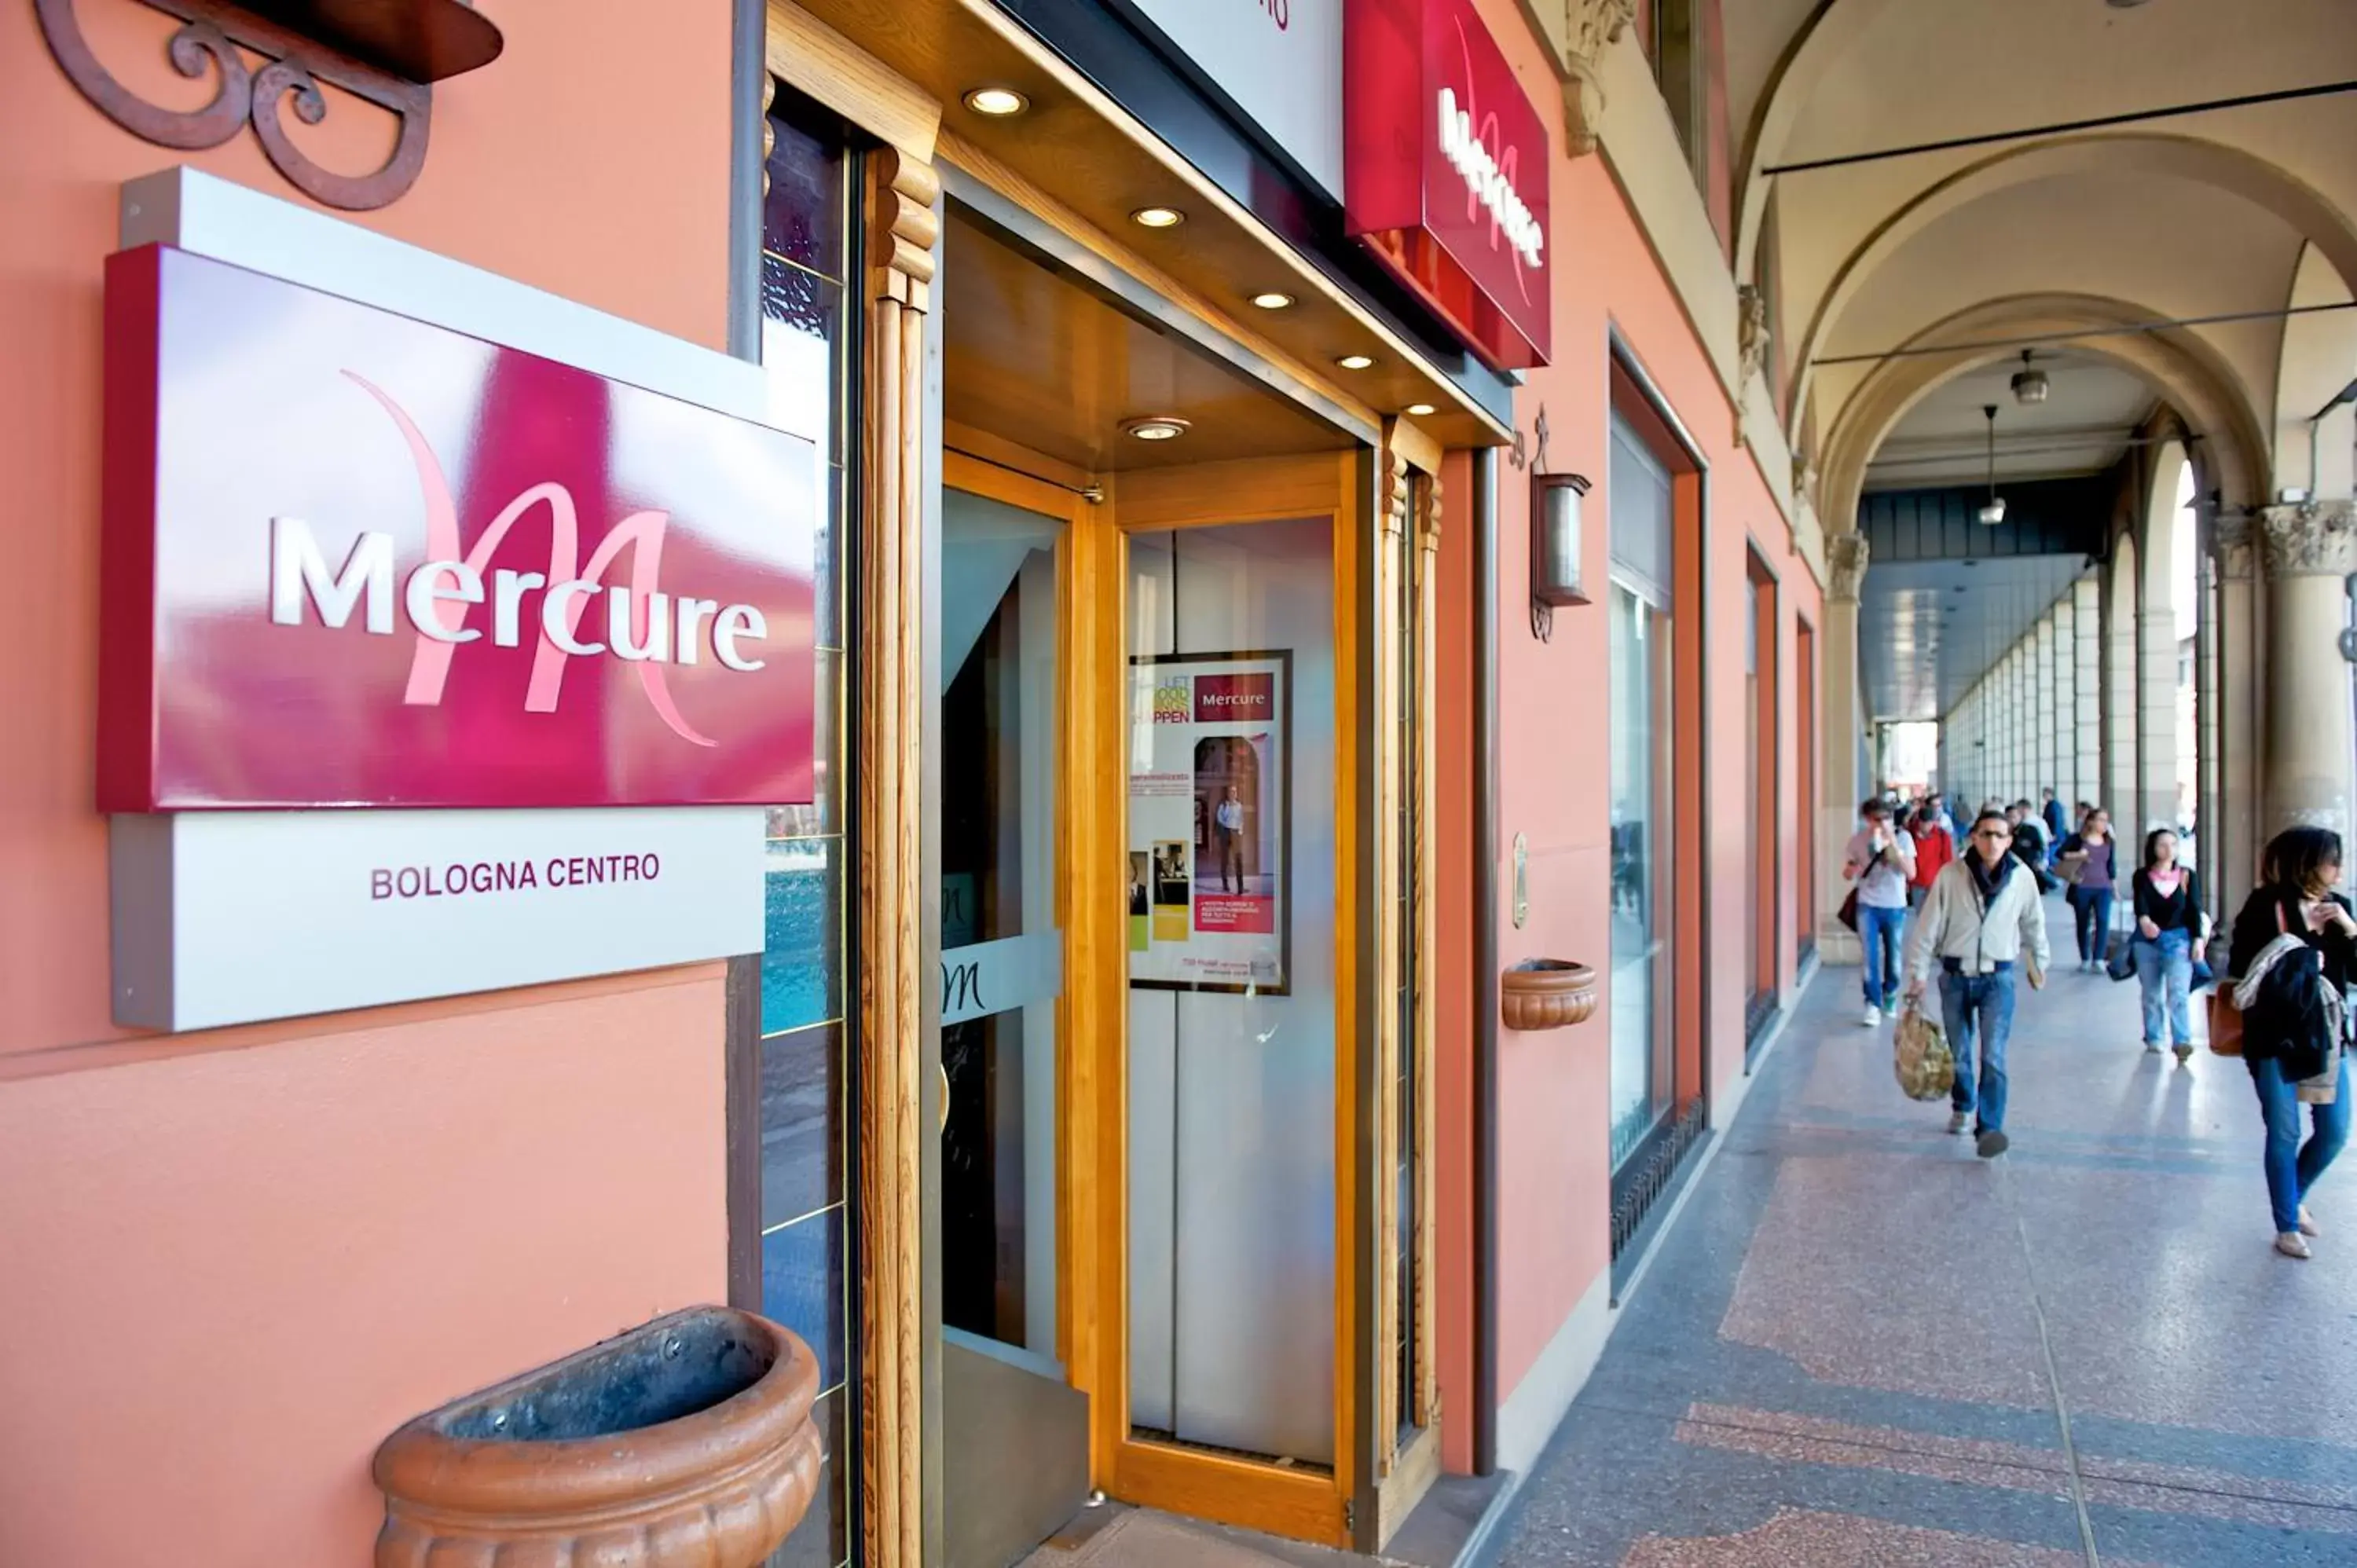 Facade/entrance in Mercure Bologna Centro